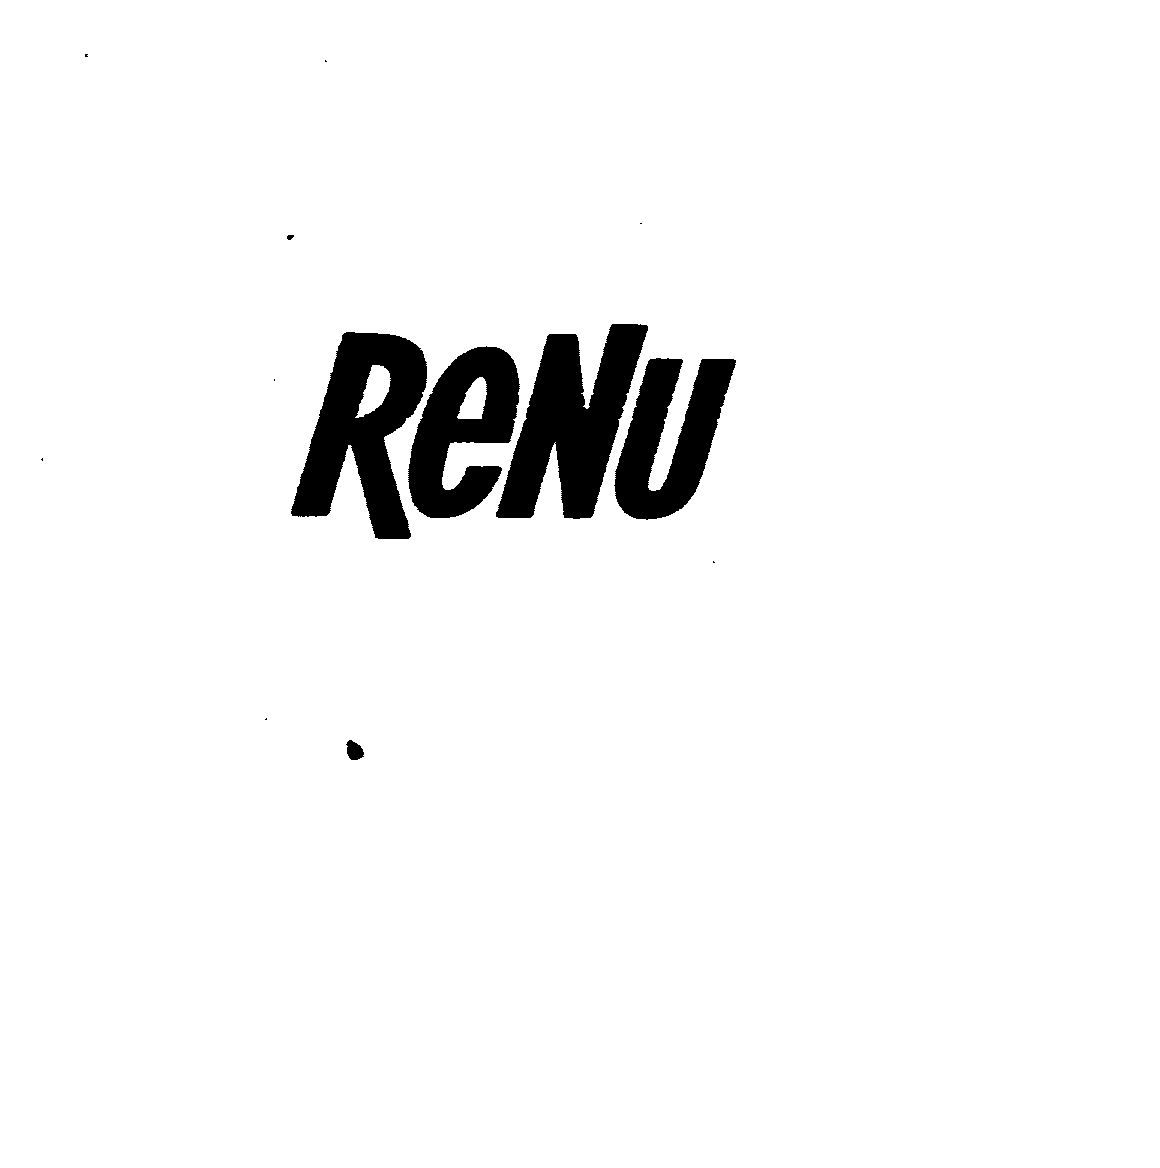 Trademark Logo RENU